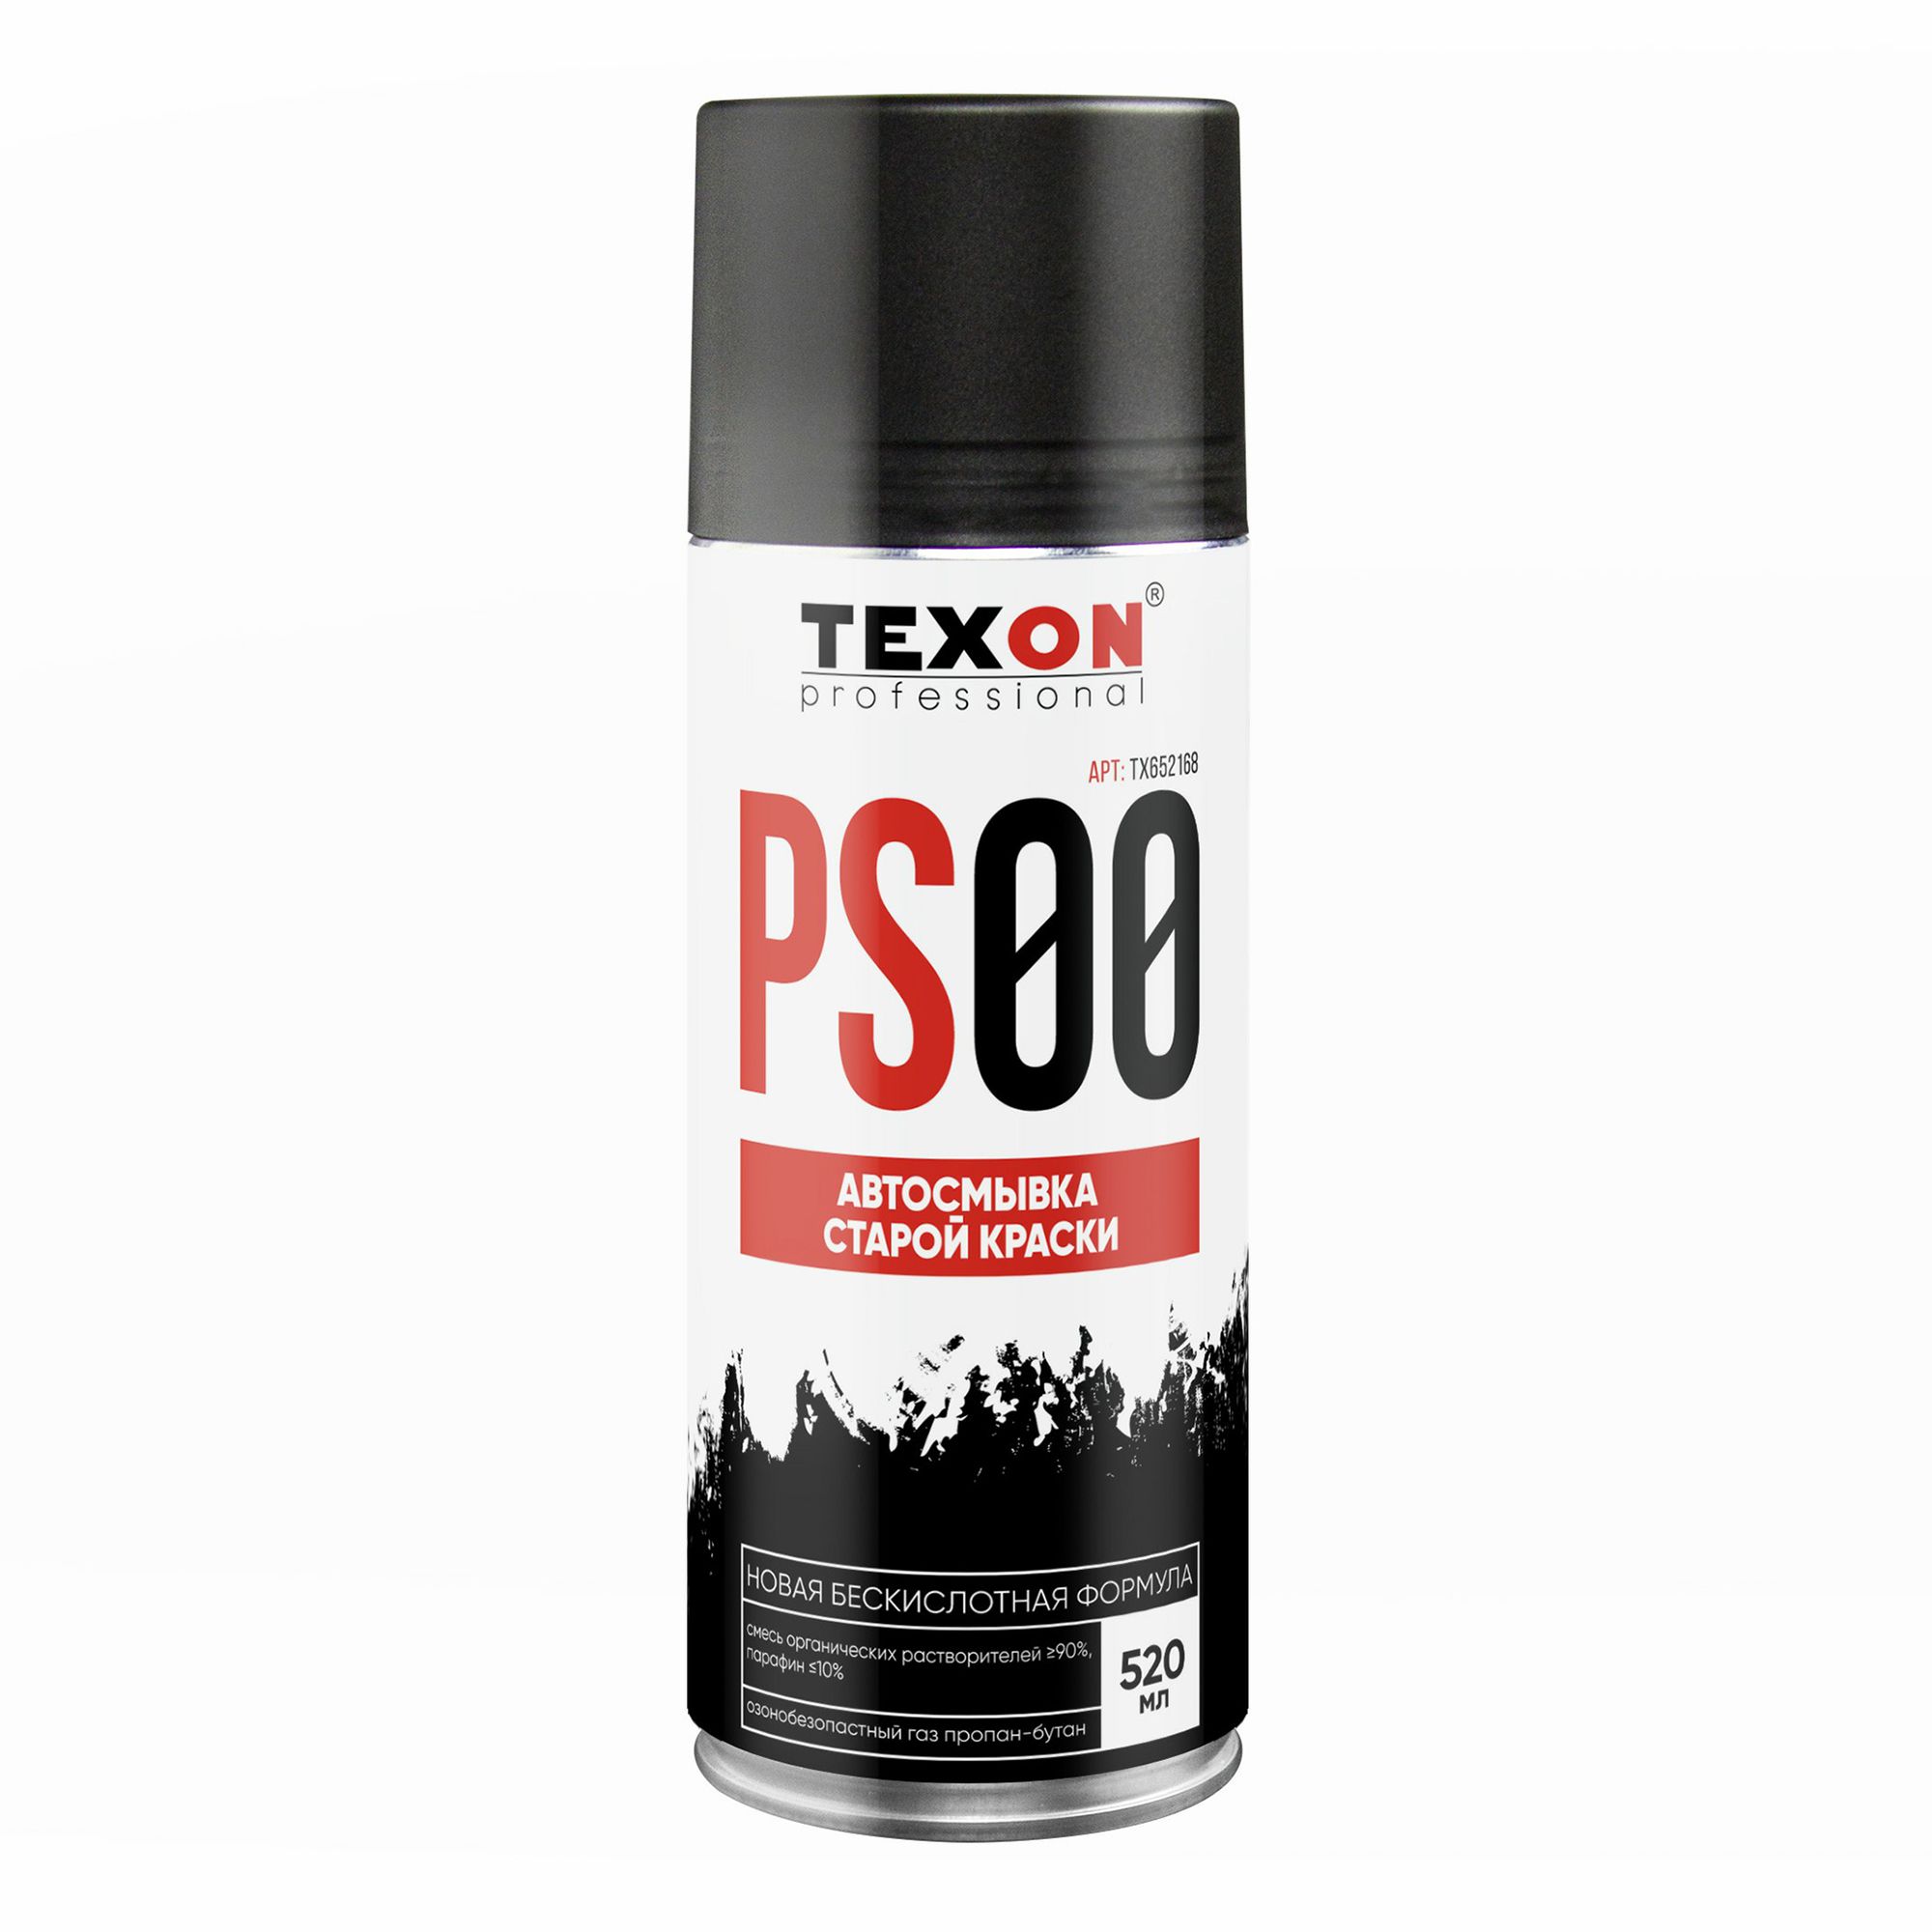 Очиститель Texon Автосмывка старой краски 520 мл очиститель тормозной системы texon